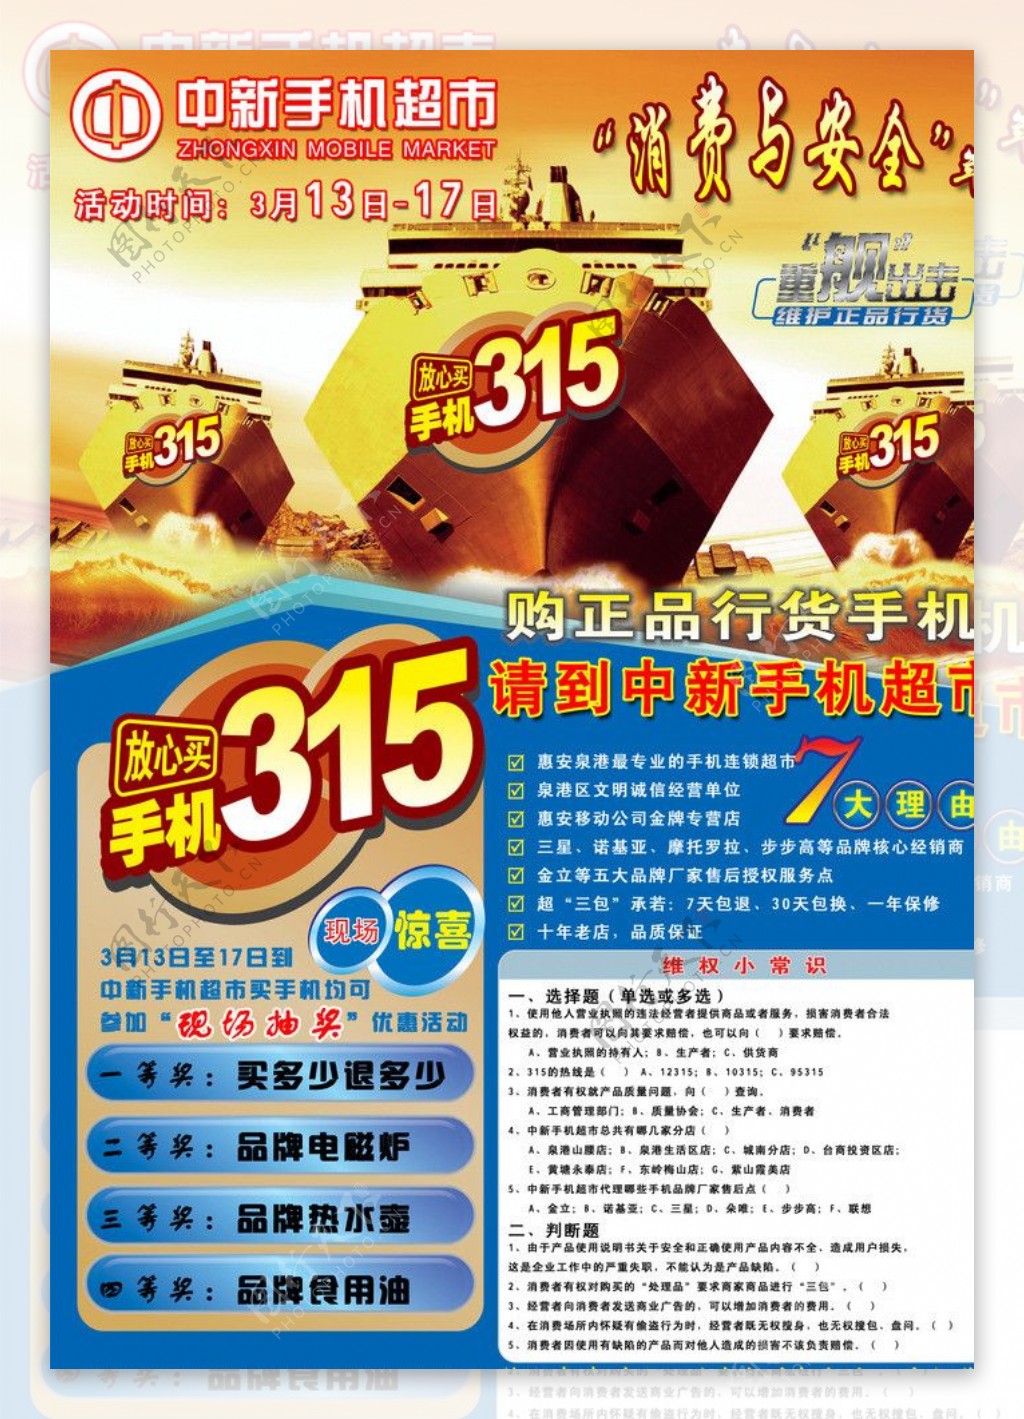 中新手机超市315宣传单正图片